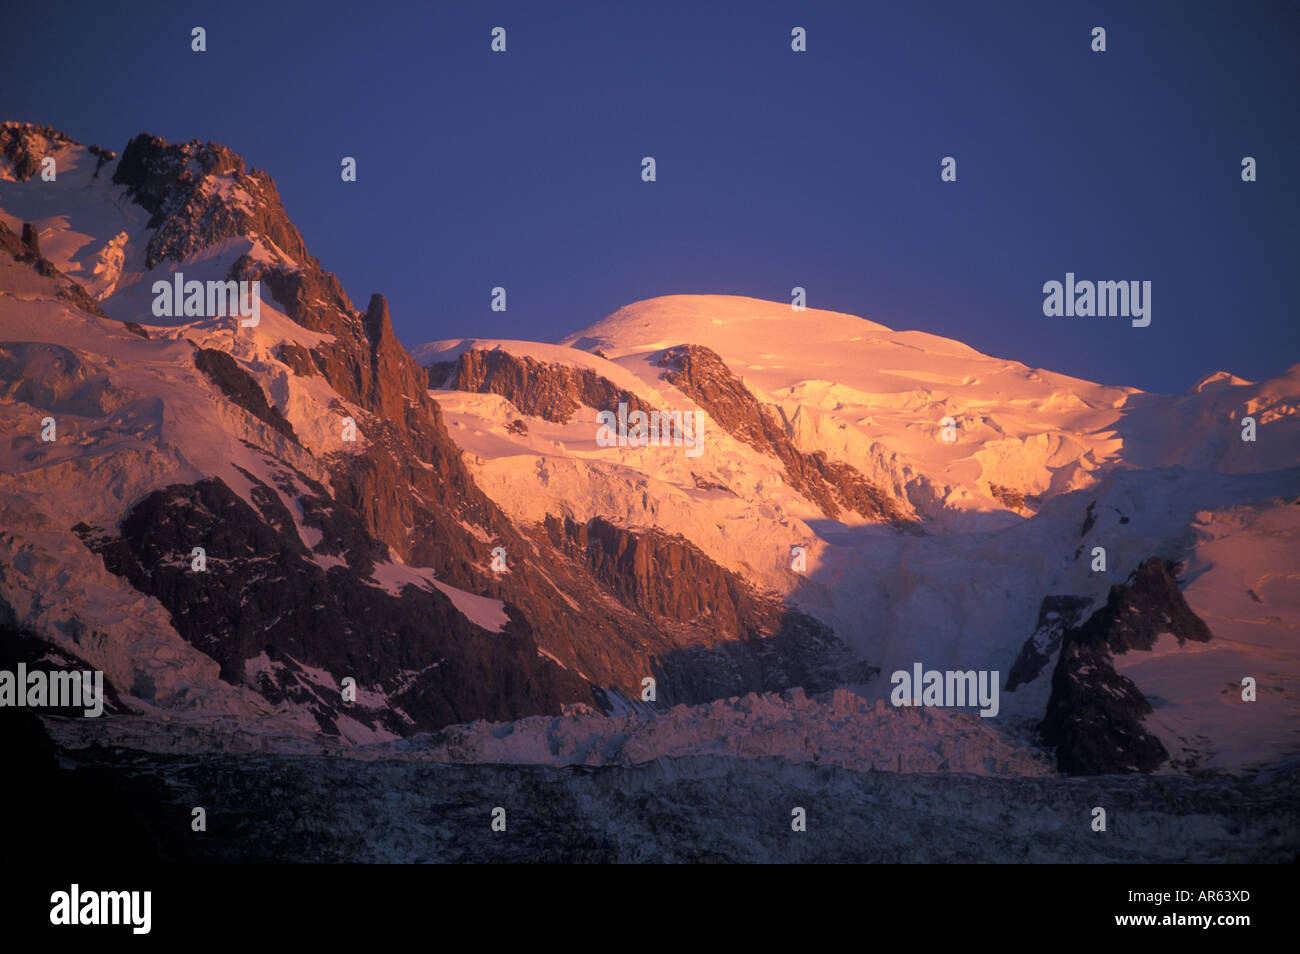 Coucher du soleil sur le Mont Blanc, la plus haute montagne d'Europe, Chamonix, France Banque D'Images